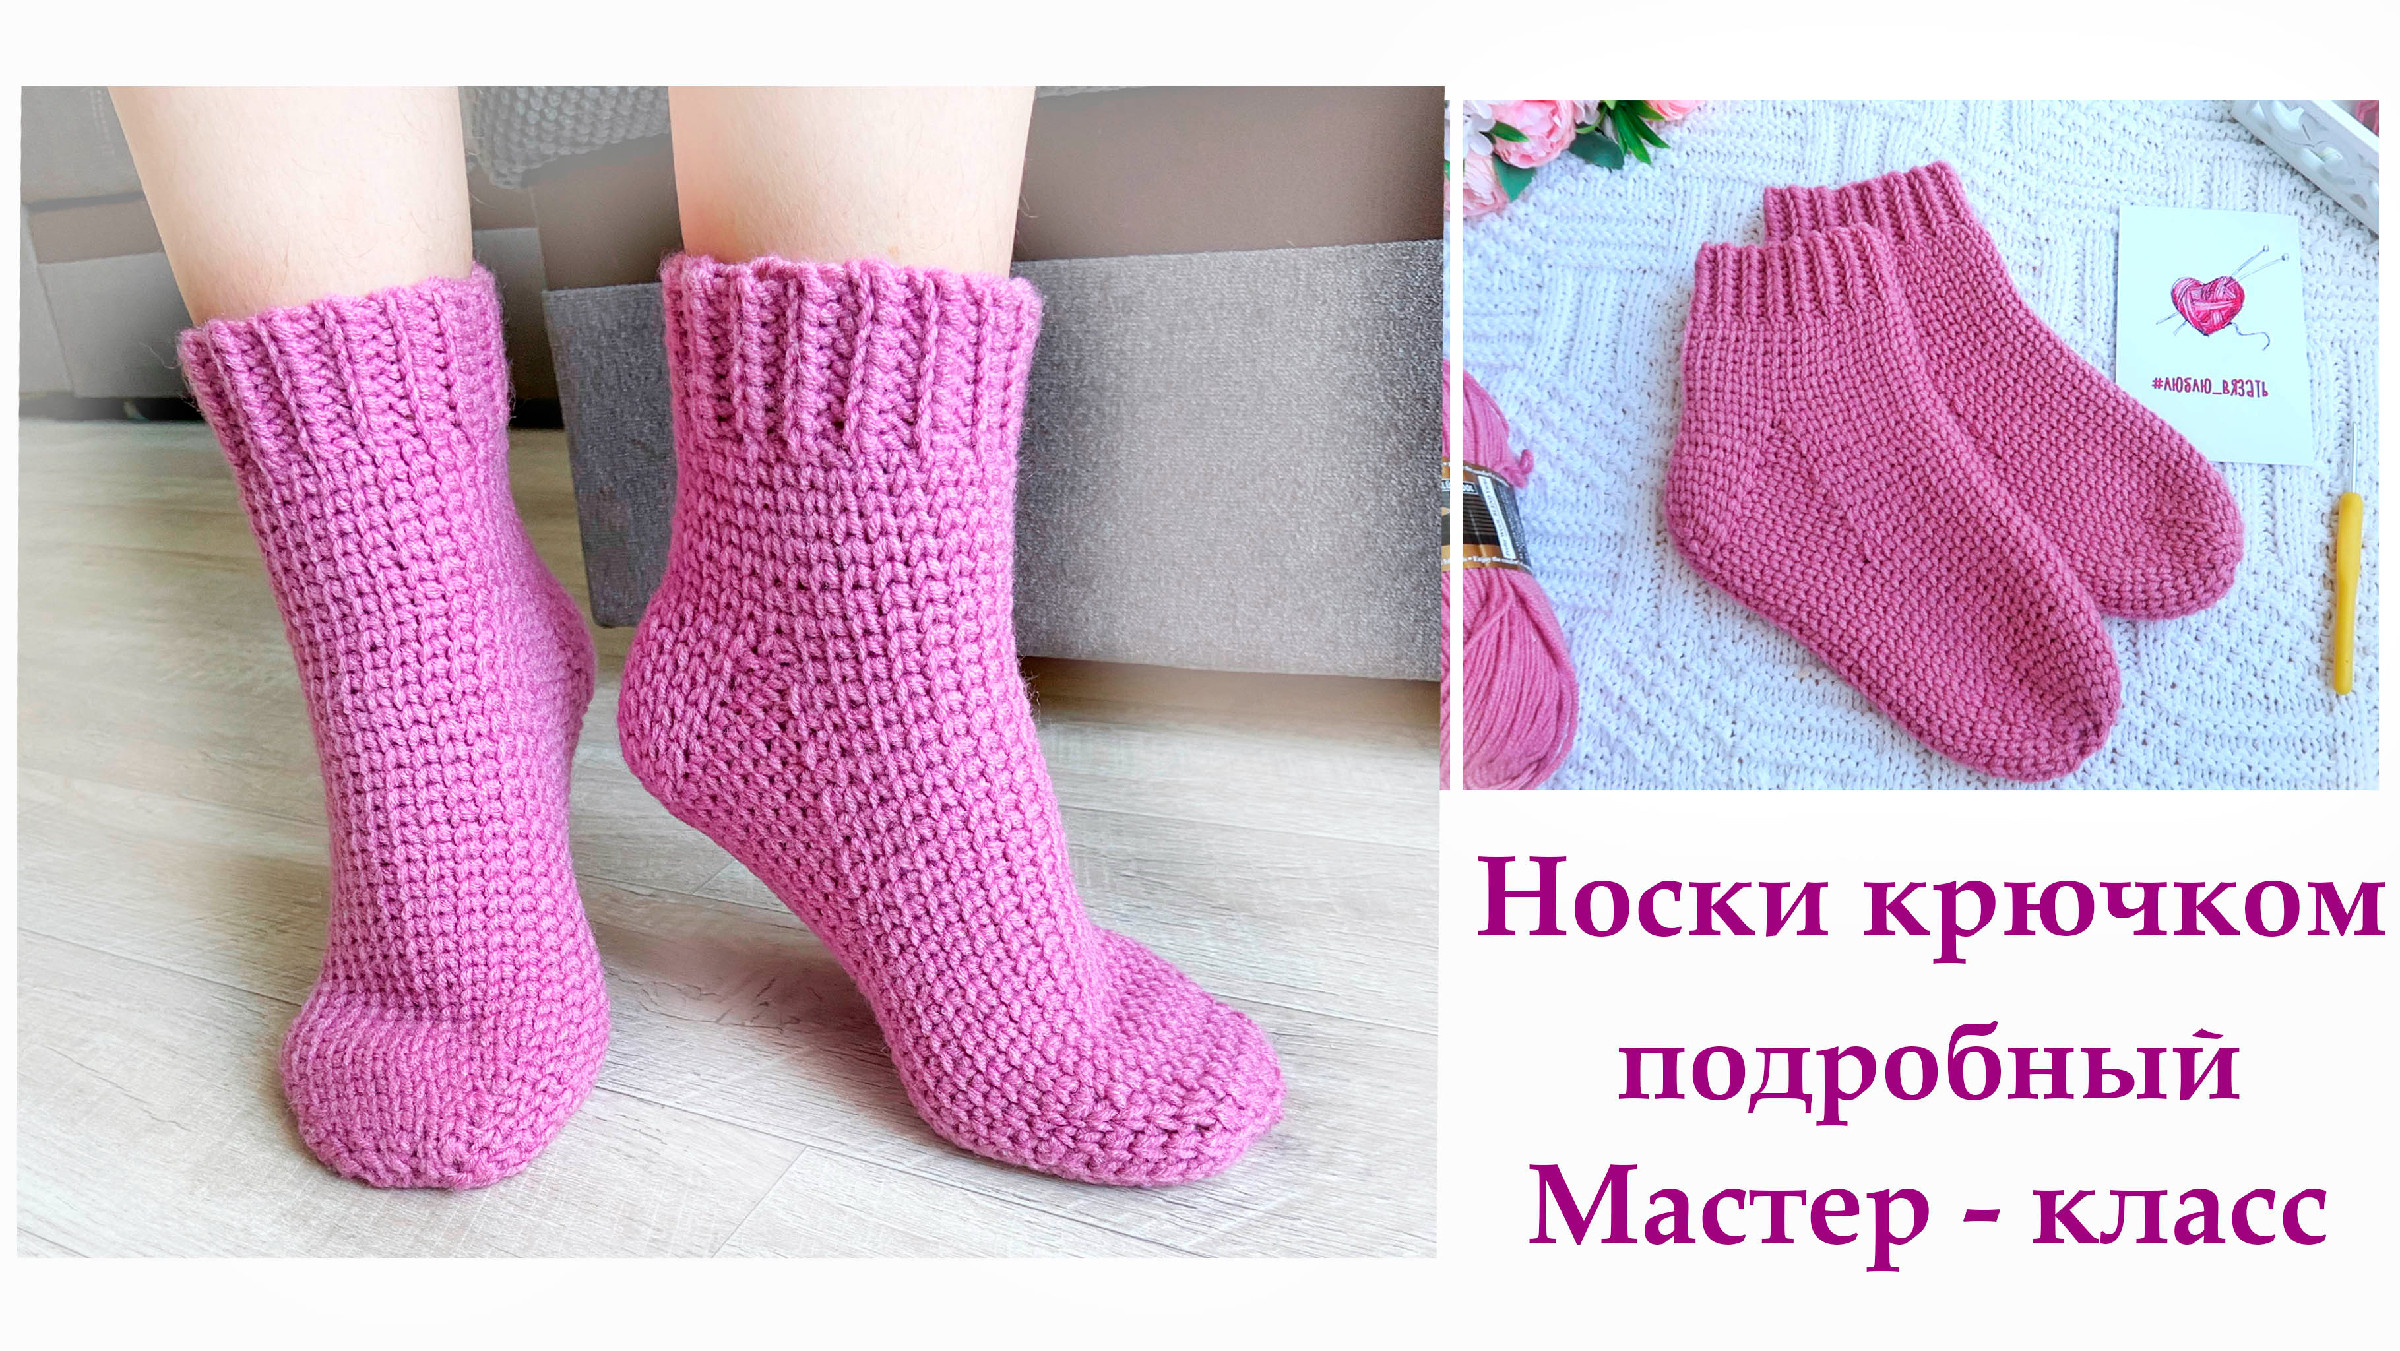 Мастер-класс по вязанию носков| Мастер-классы по вязанию в Санкт-Петербурге